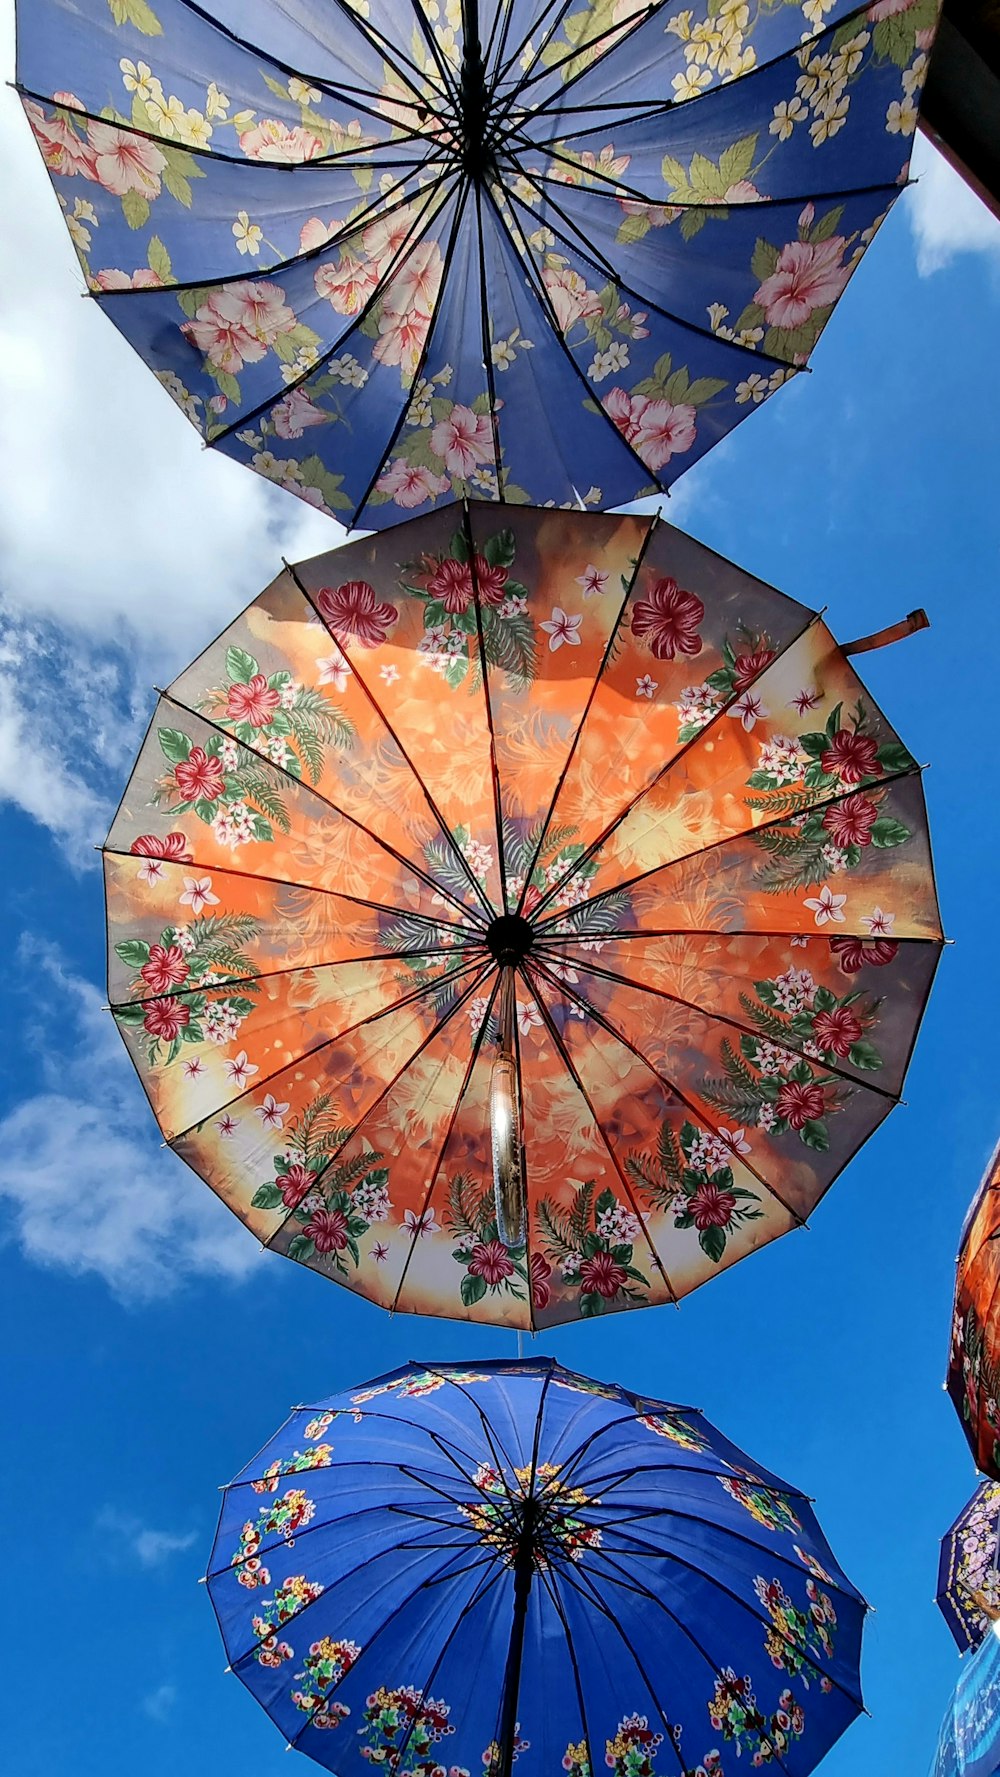 orange and red floral umbrella under blue sky